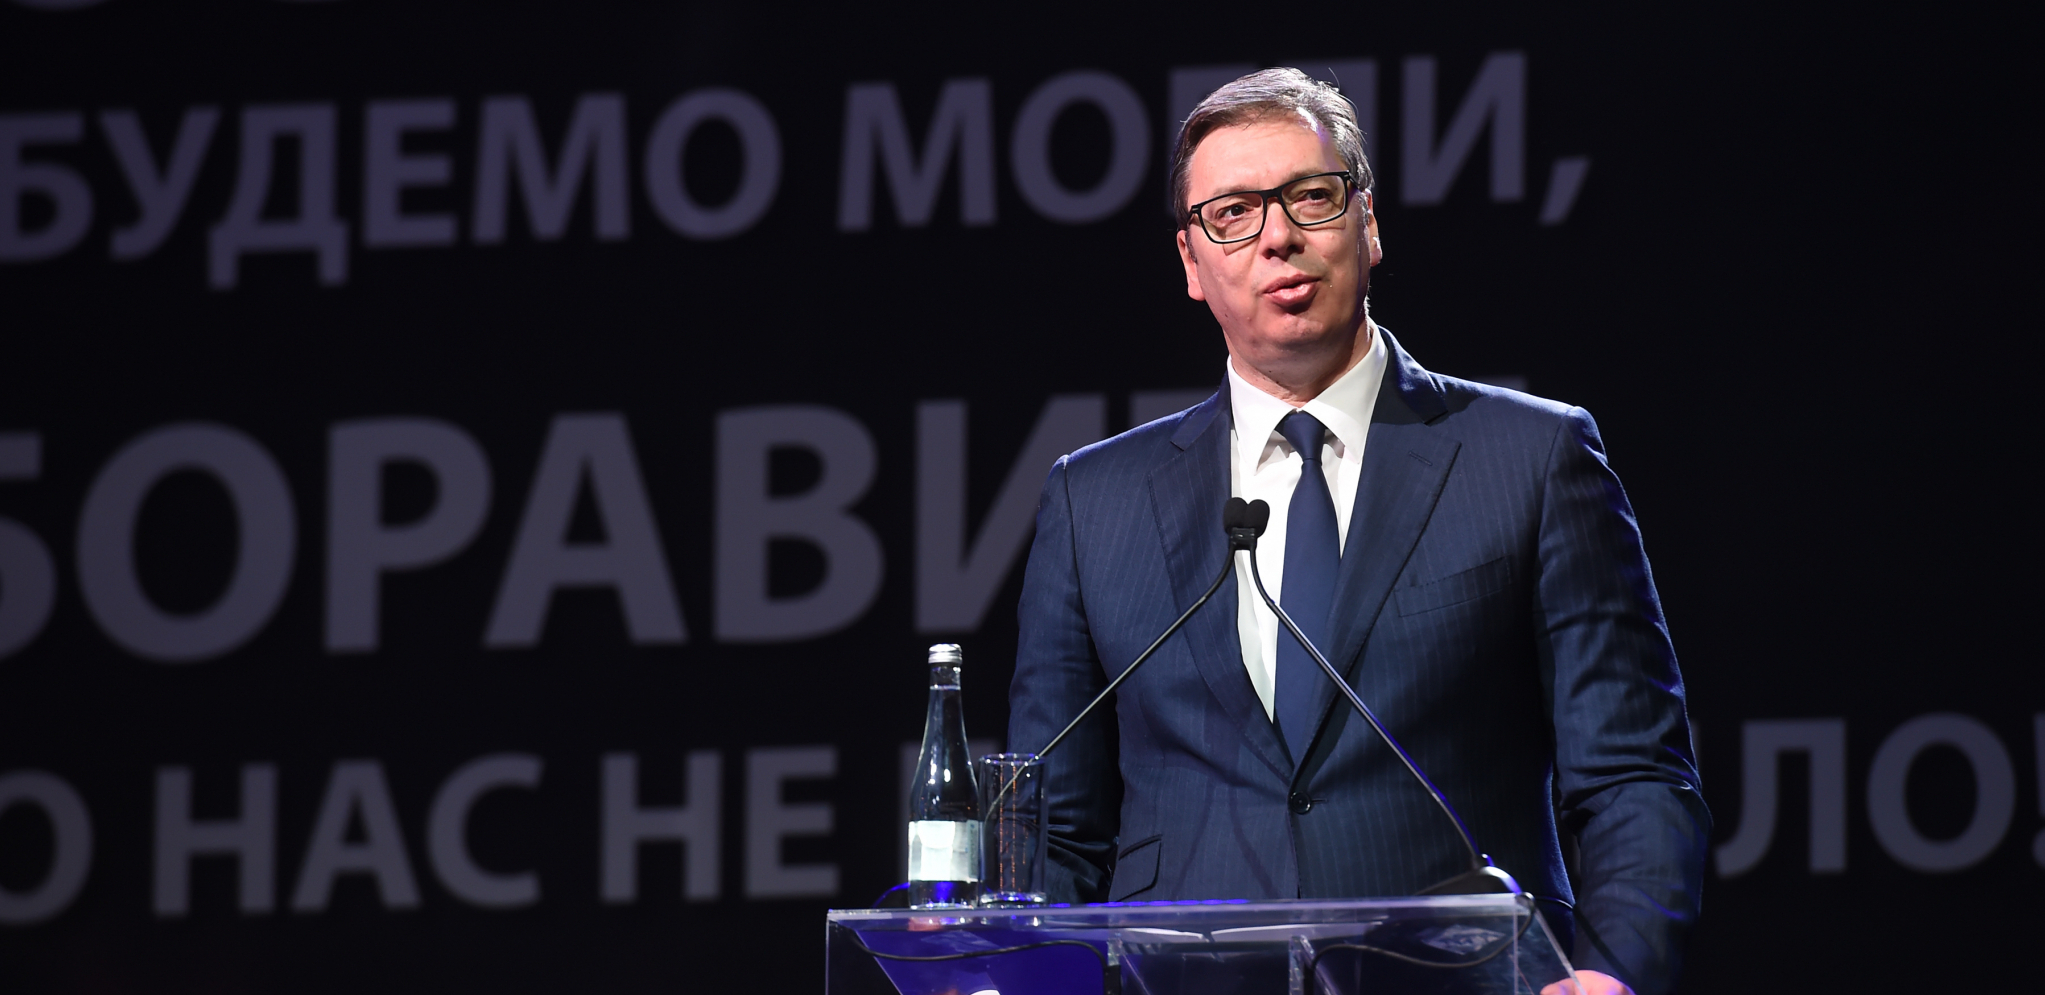 SNAŽNA PORUKA ĐUKANOVIĆA "Vučić kao izraziti lider može i mora da dobije ogromno poverenje naroda na nastupajućim predsedničkim izborima" (VIDEO)